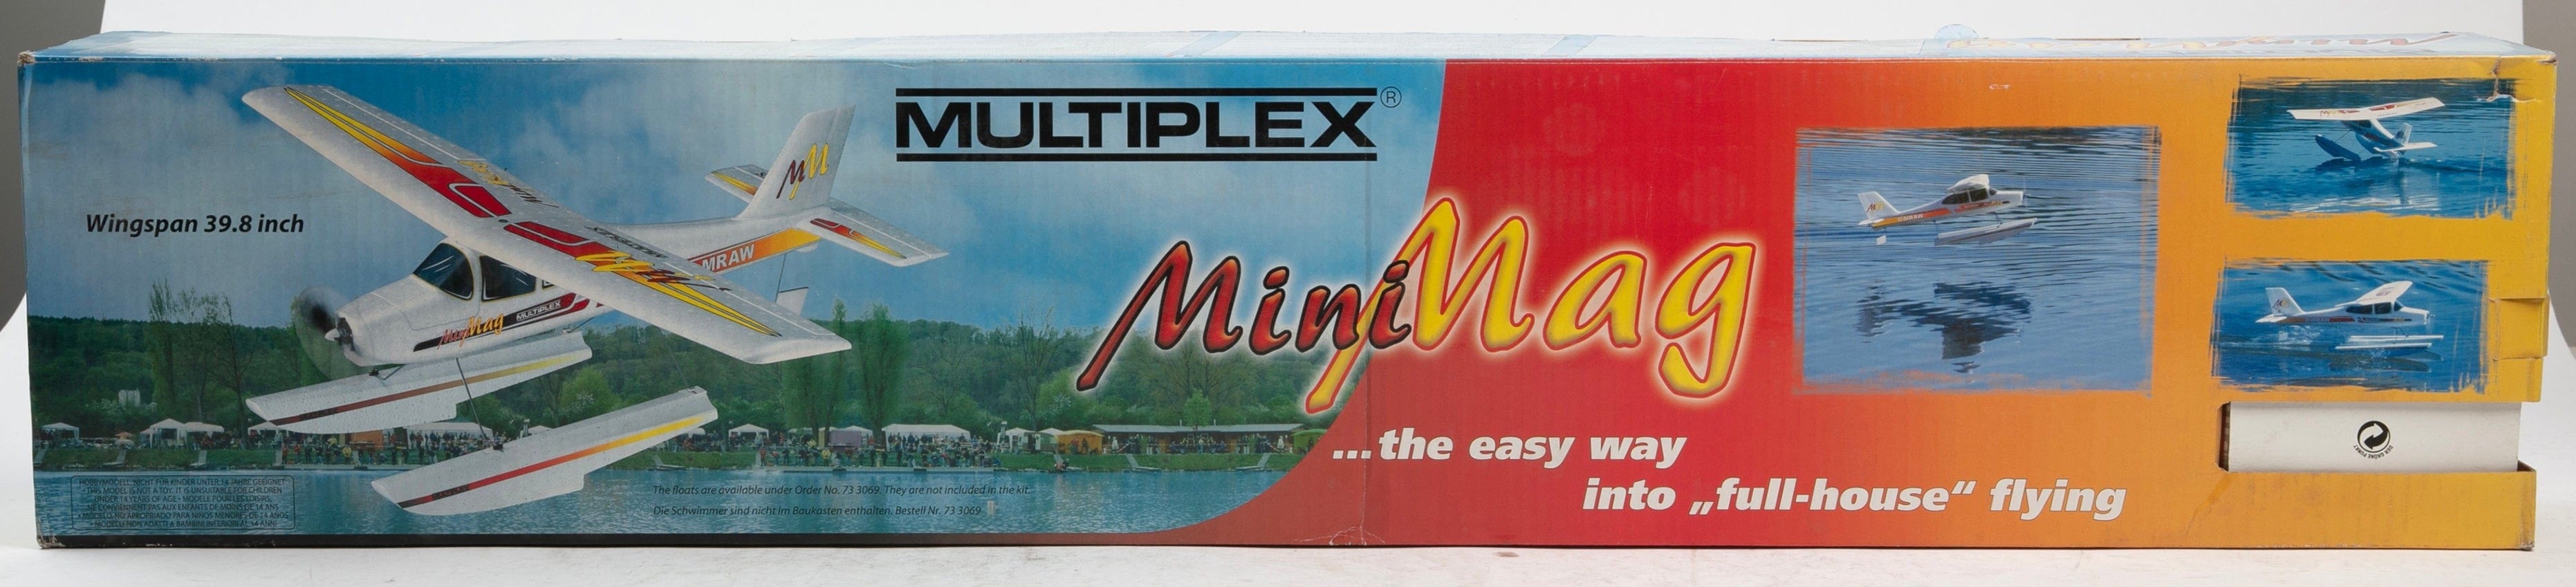 Multiplex Minimag RC Plane 21-4211 #0407